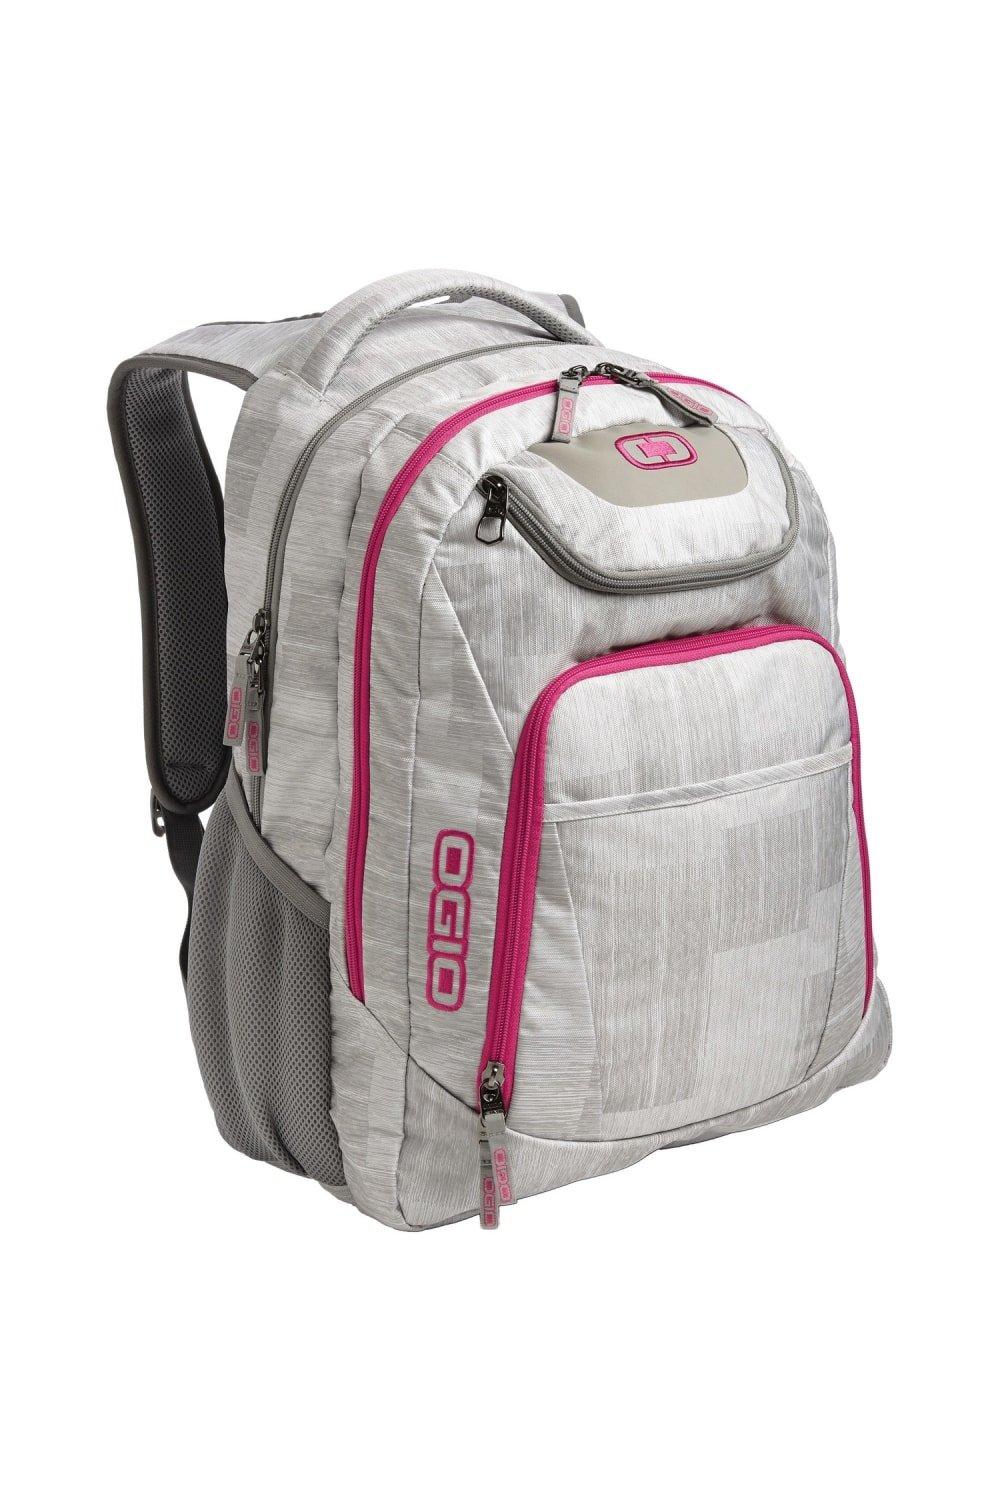 Business Excelsior Laptop Backpack Rucksack Pack of 2